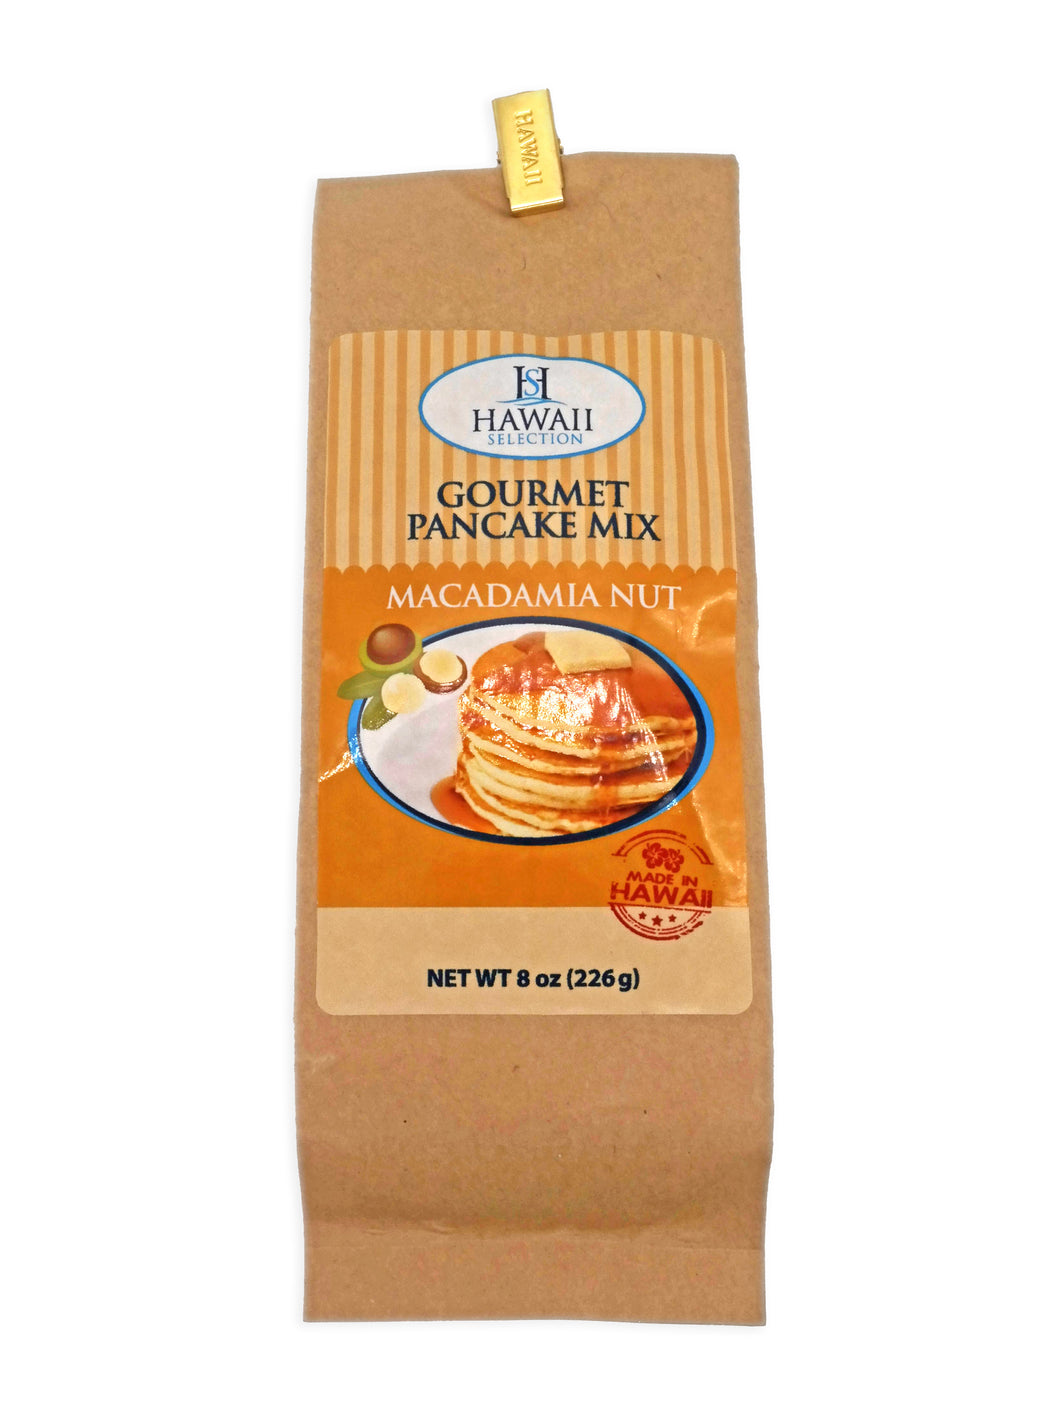 Hawaii Selection Gourmet Pancake Mix - Macadamia Nut